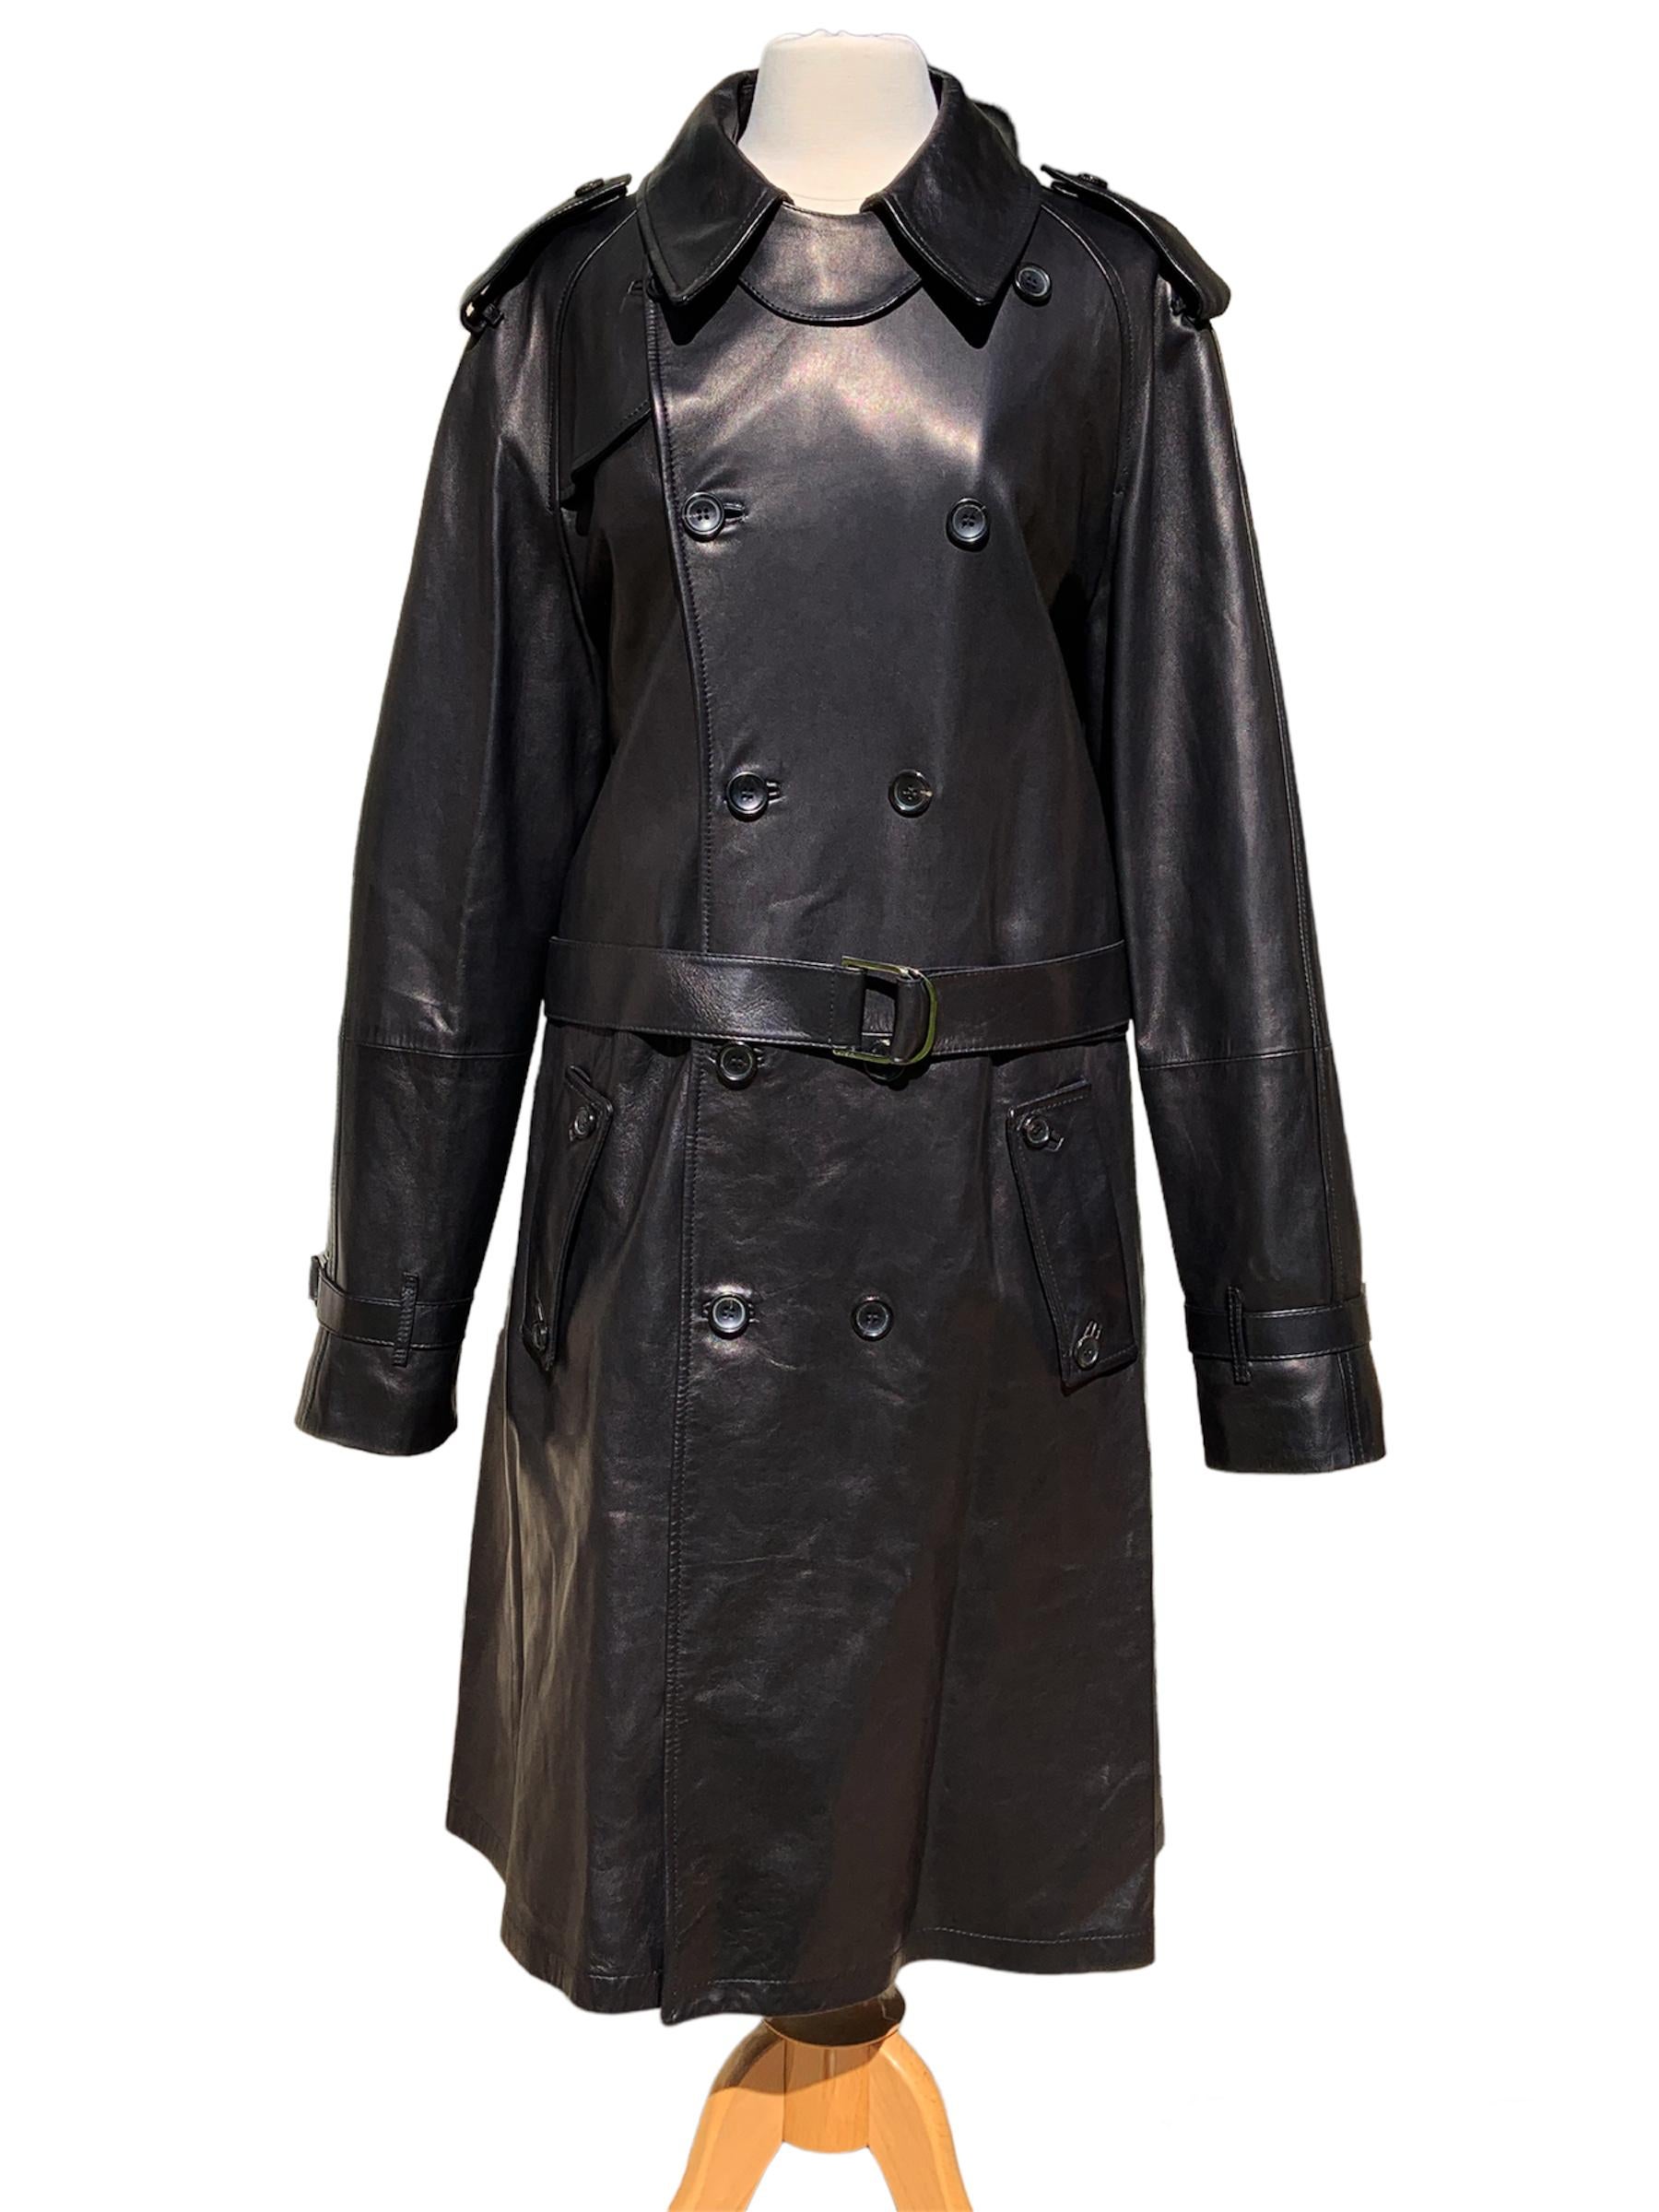 Der neue und ikonische schwarze Ledermantel von Tom Ford für Gucci für Herren
F/W 2001 Collection'S
Italienische Größe 54 (US 44)
Echtes Leder, Zweireiher, Schulterklappen, abnehmbarer Gürtel, Seitentaschen, Innentasche.
Rückenschlitz mit